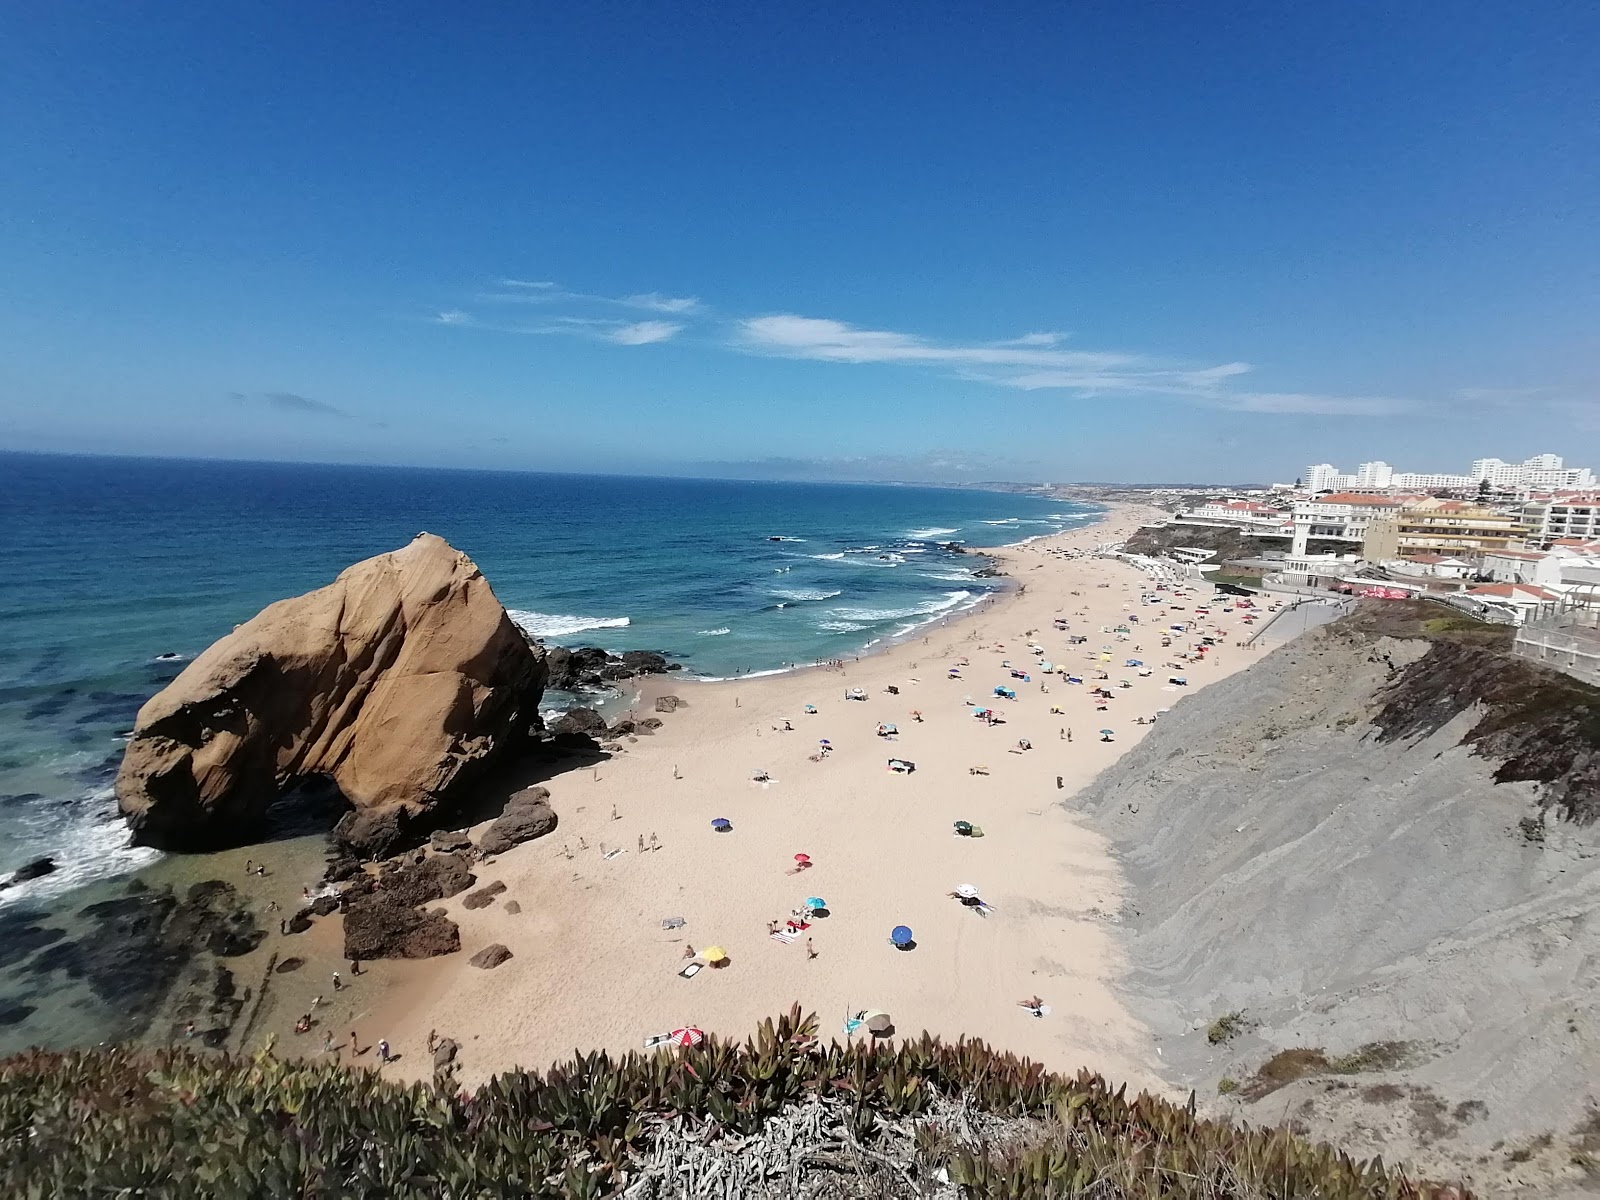 Foto af Praia de Santa Cruz - populært sted blandt afslapningskendere